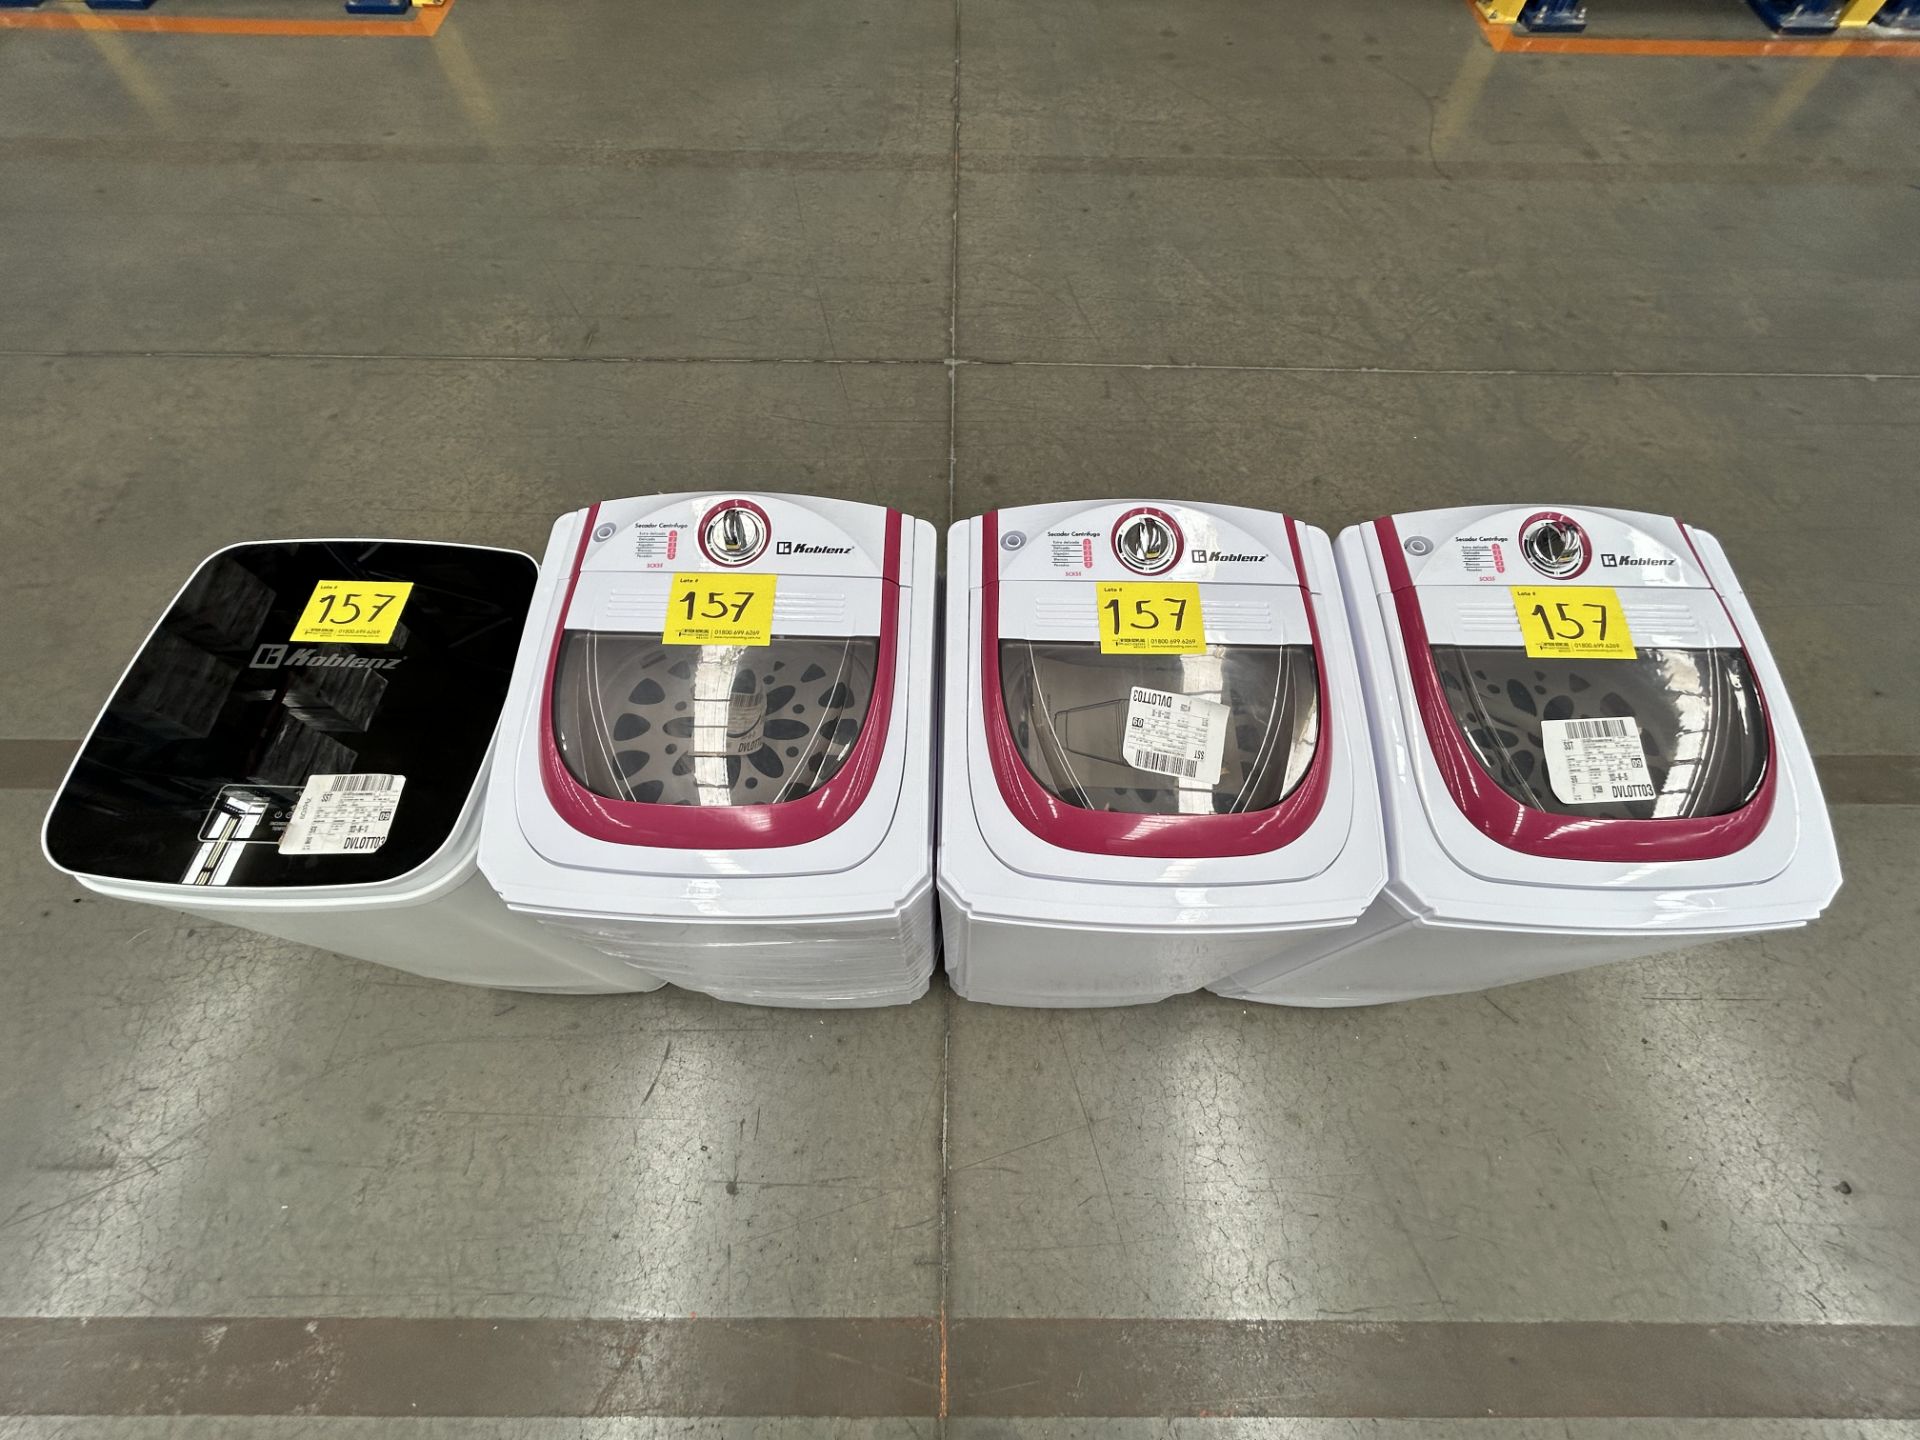 Lote de 4 lavadoras contiene: 1 secador centrifugado Marca KOBLENZ, Modelo SCK55; 1 secador centrif - Image 4 of 5